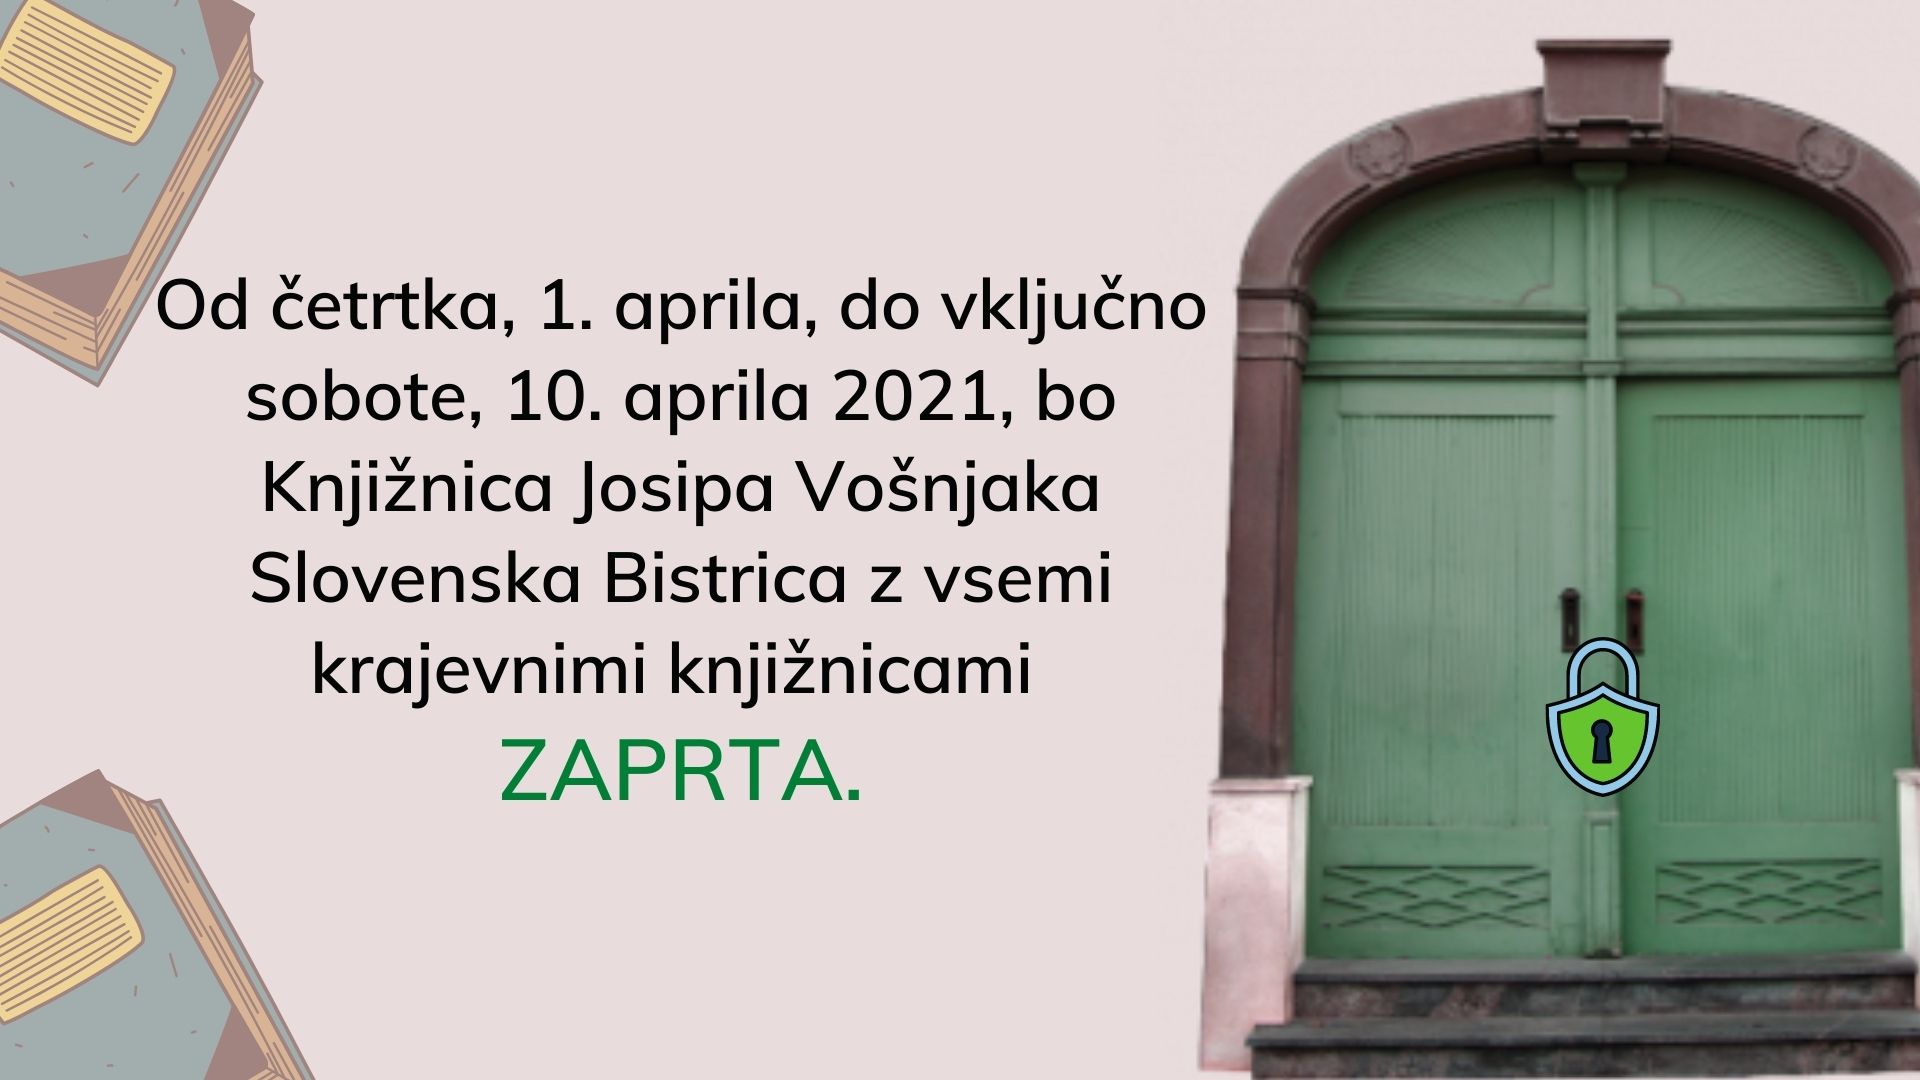 Od četrtka 1. aprila do vključno sobote 10. aprila 2021 bo Knjižnica Josipa Vošnjaka Slovenska Bistrica z vsemi krajevnimi knjižnicami ZAPRTA. 1